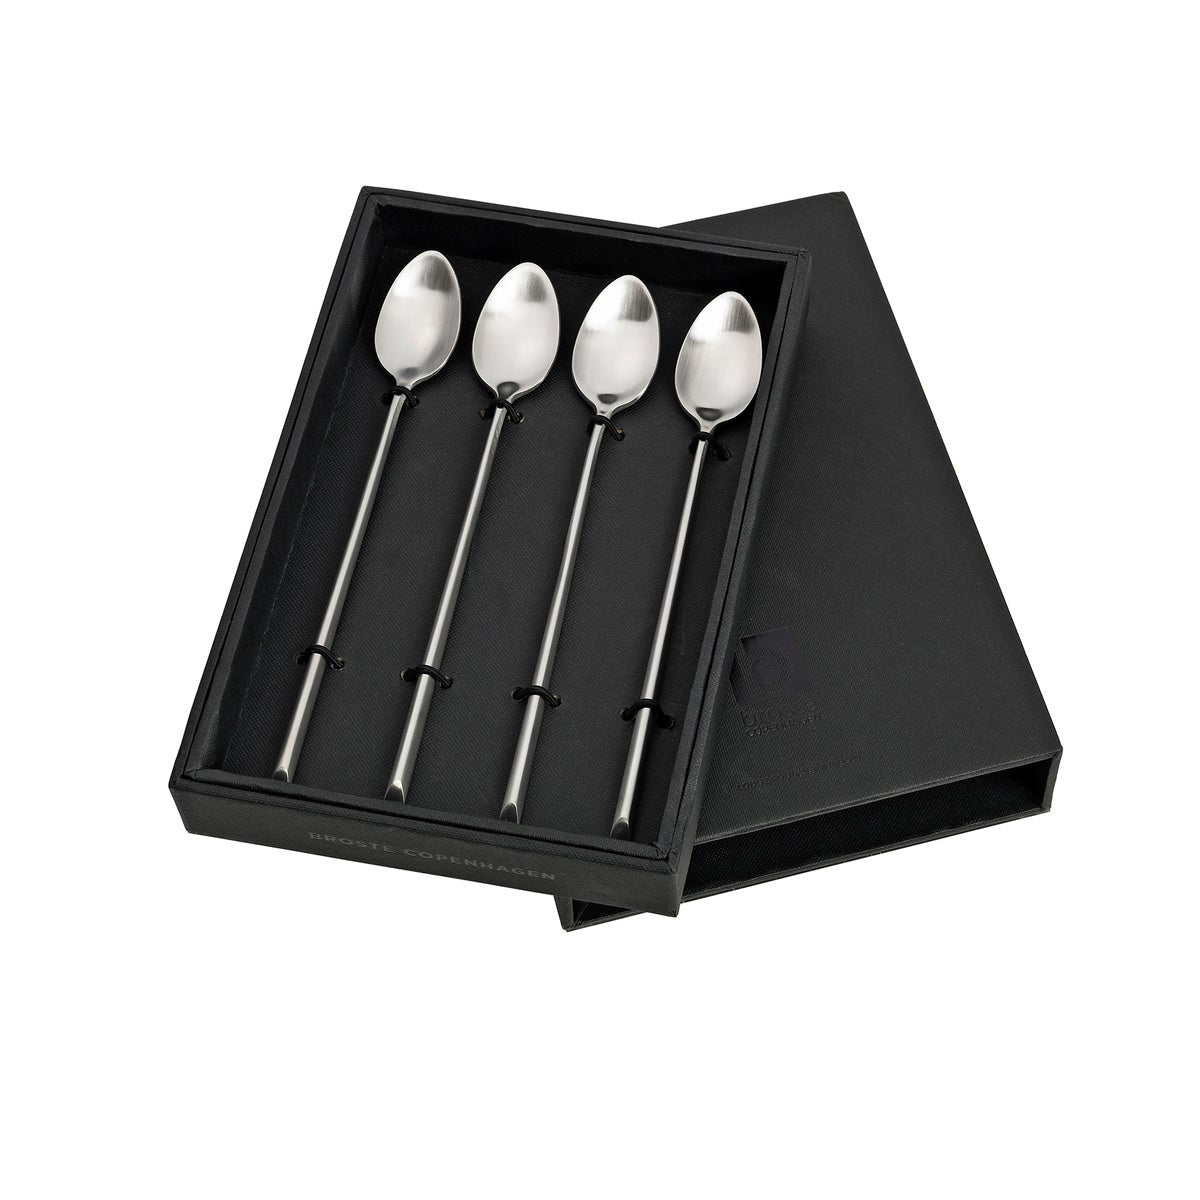 Broste Cutlery Sletten Long Spoons - Set of 4